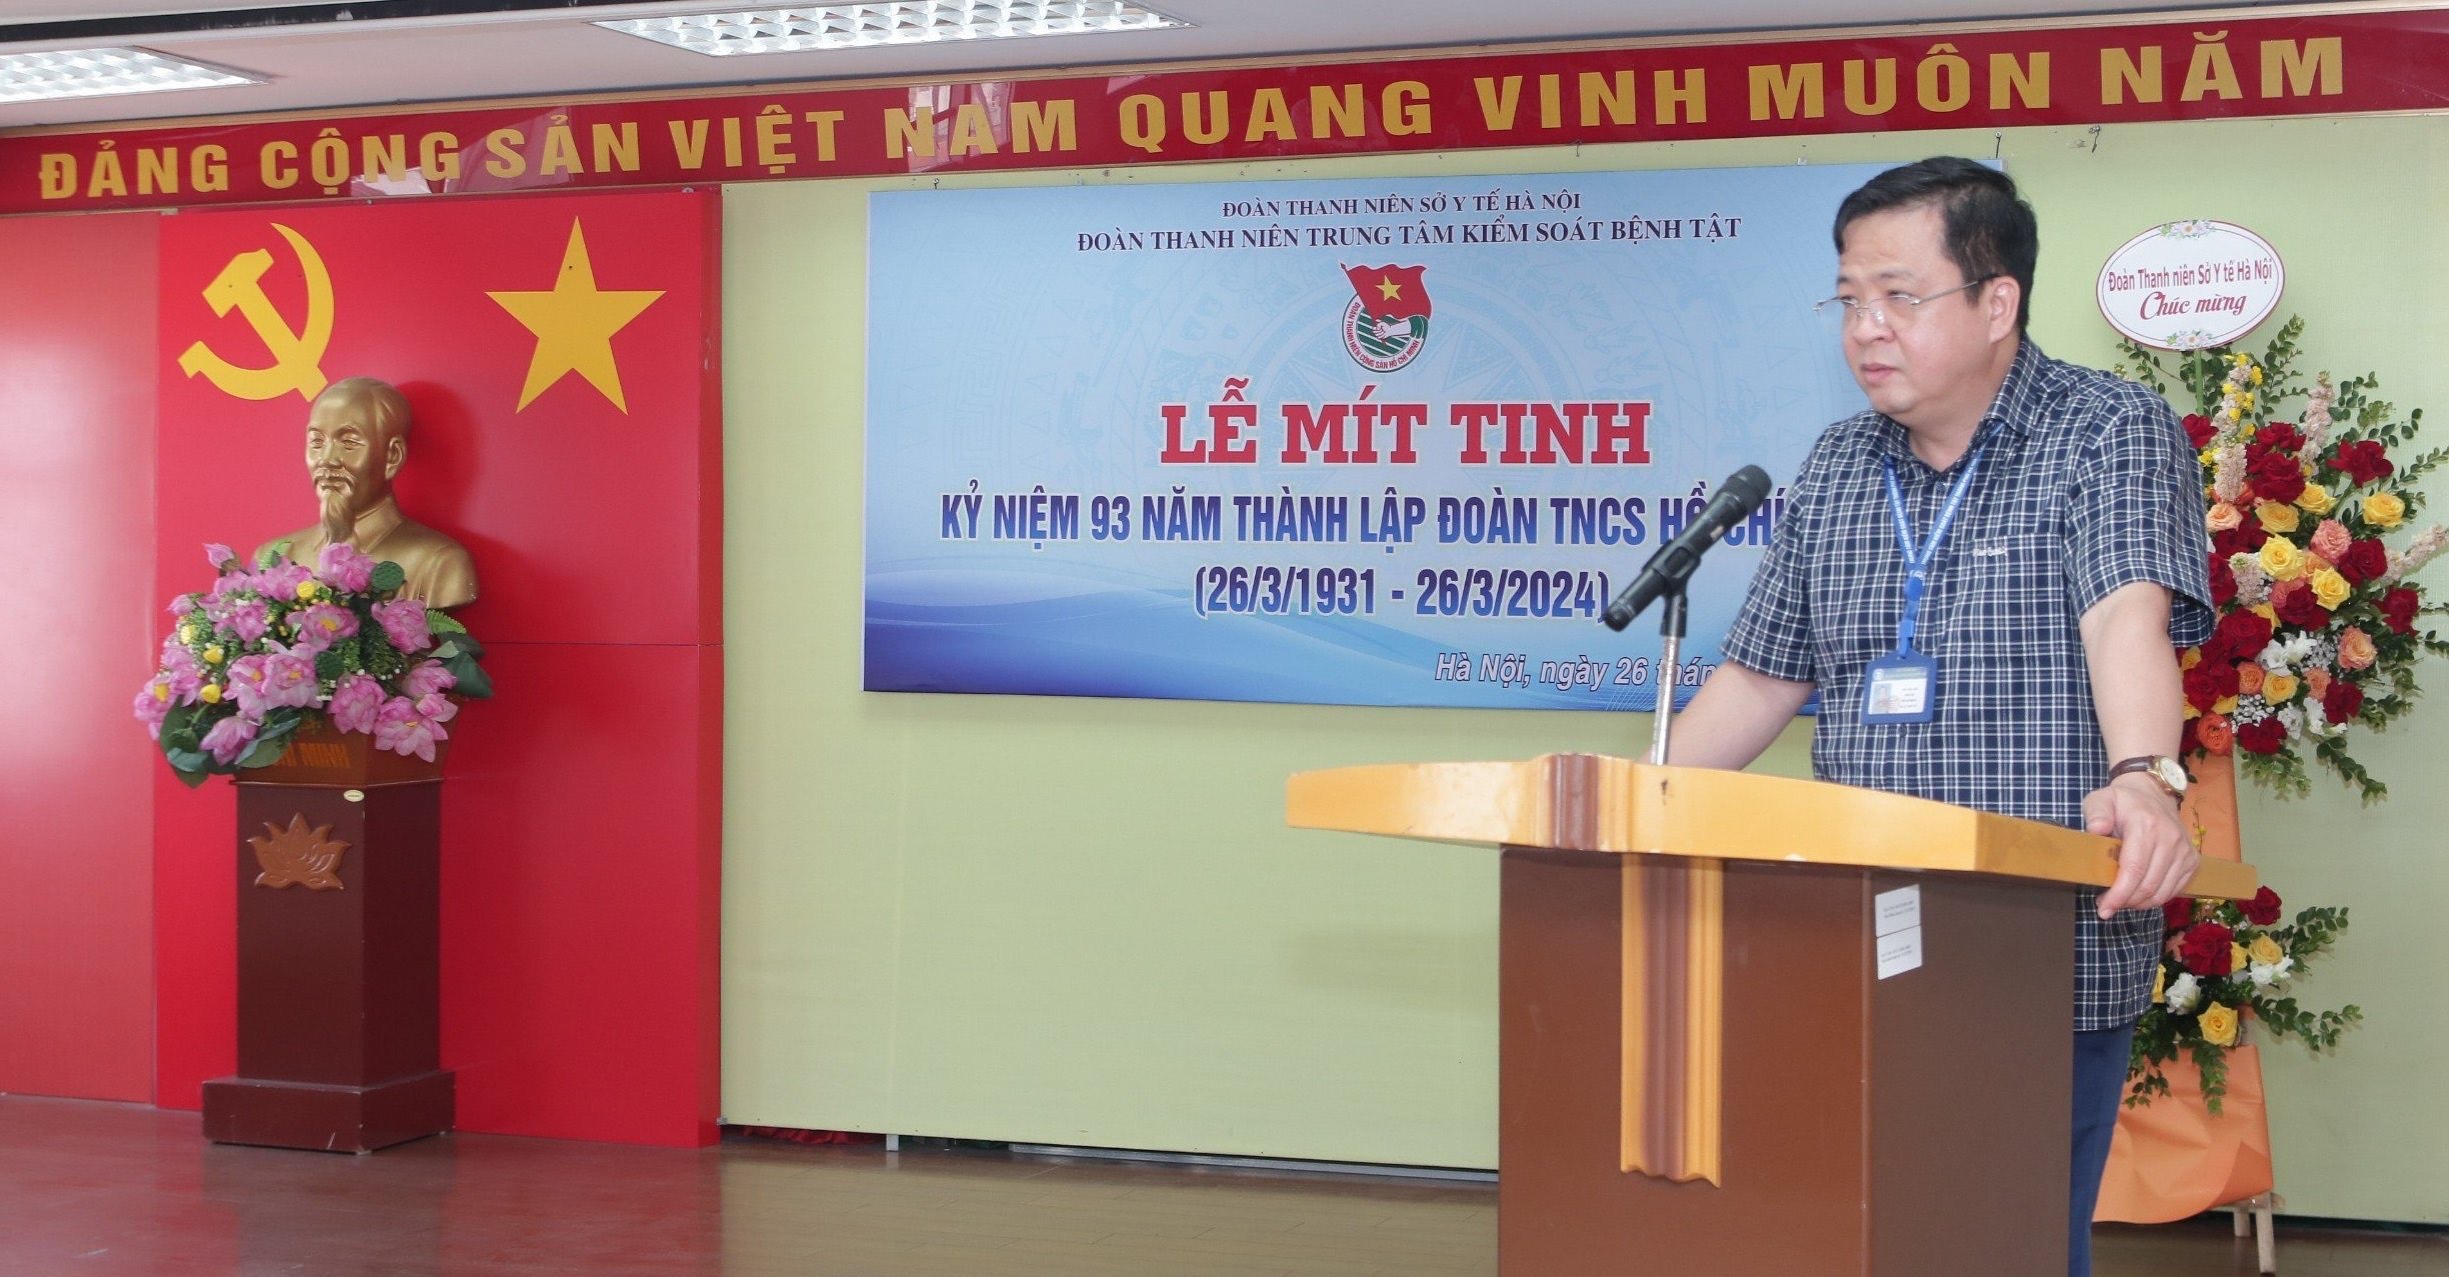 Trung tâm Kiểm soát bệnh tật thành phố Hà Nội: Mít tinh kỷ niệm 93 năm Ngày thành lập Đoàn TNCS Hồ Chí Minh 26/3